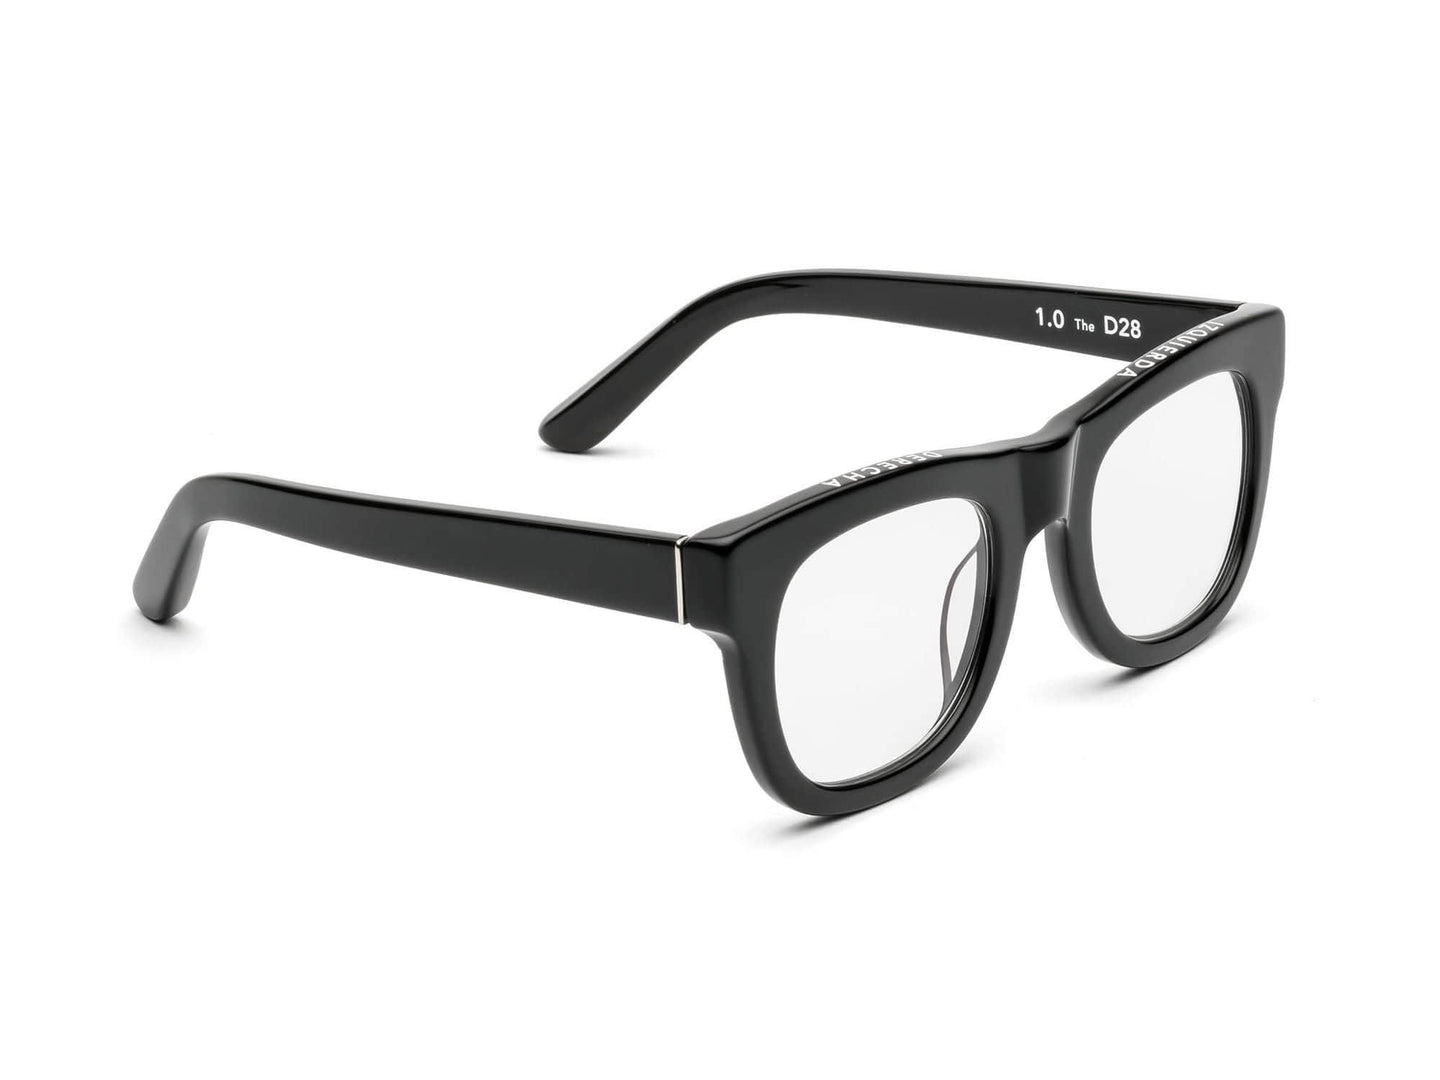 D28 Progressive Glasses